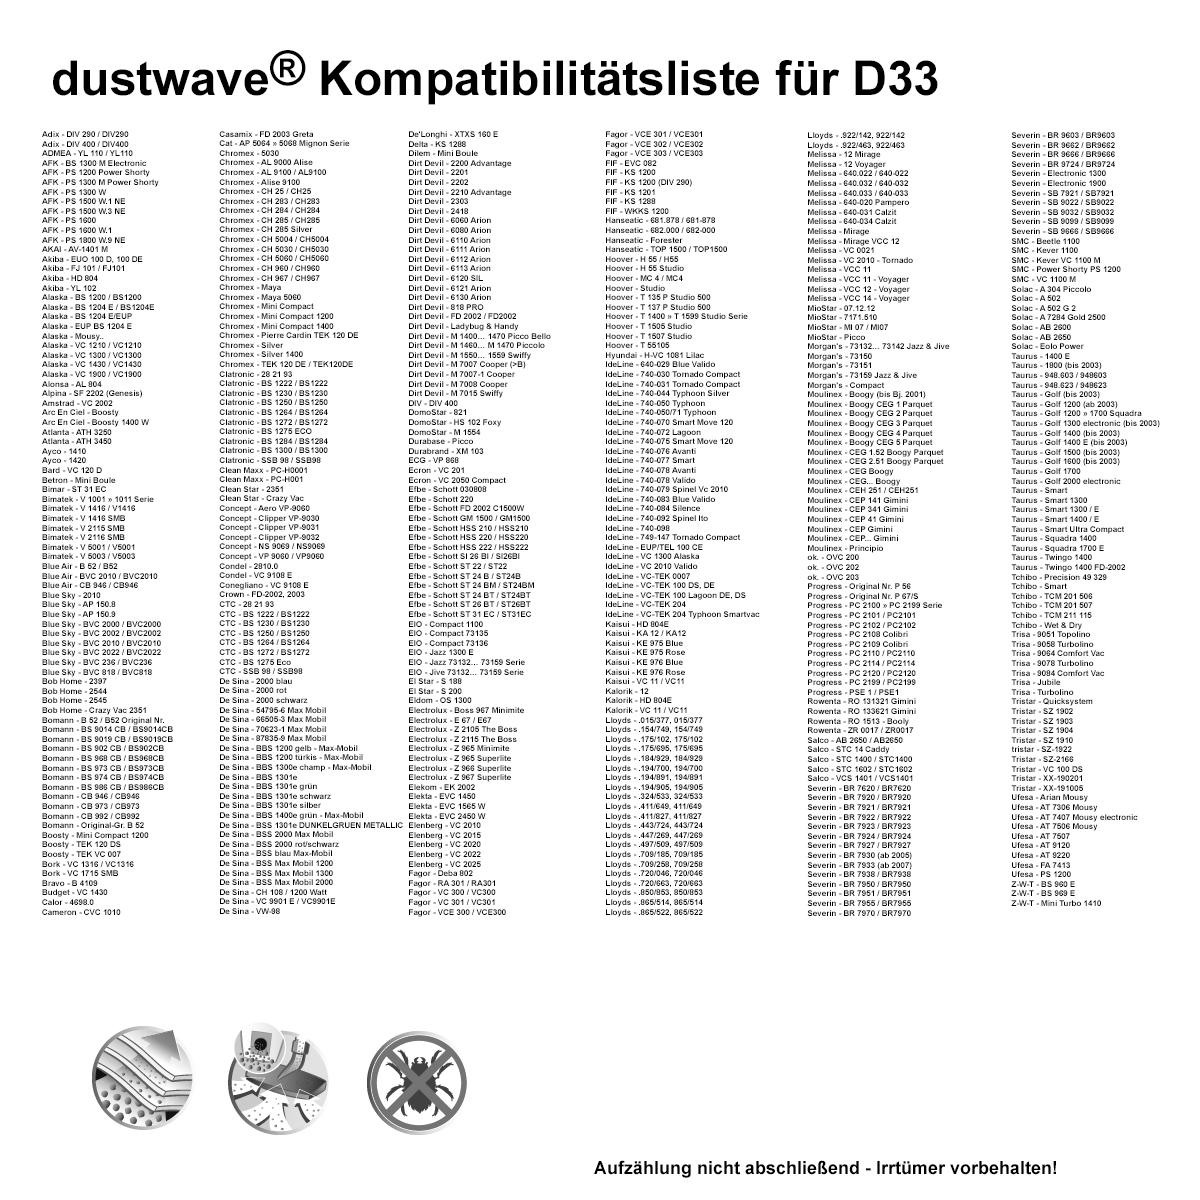 Dustwave® 1 Staubsaugerbeutel für Base BA 1750 - hocheffizient mit Hygieneverschluss - Made in Germany